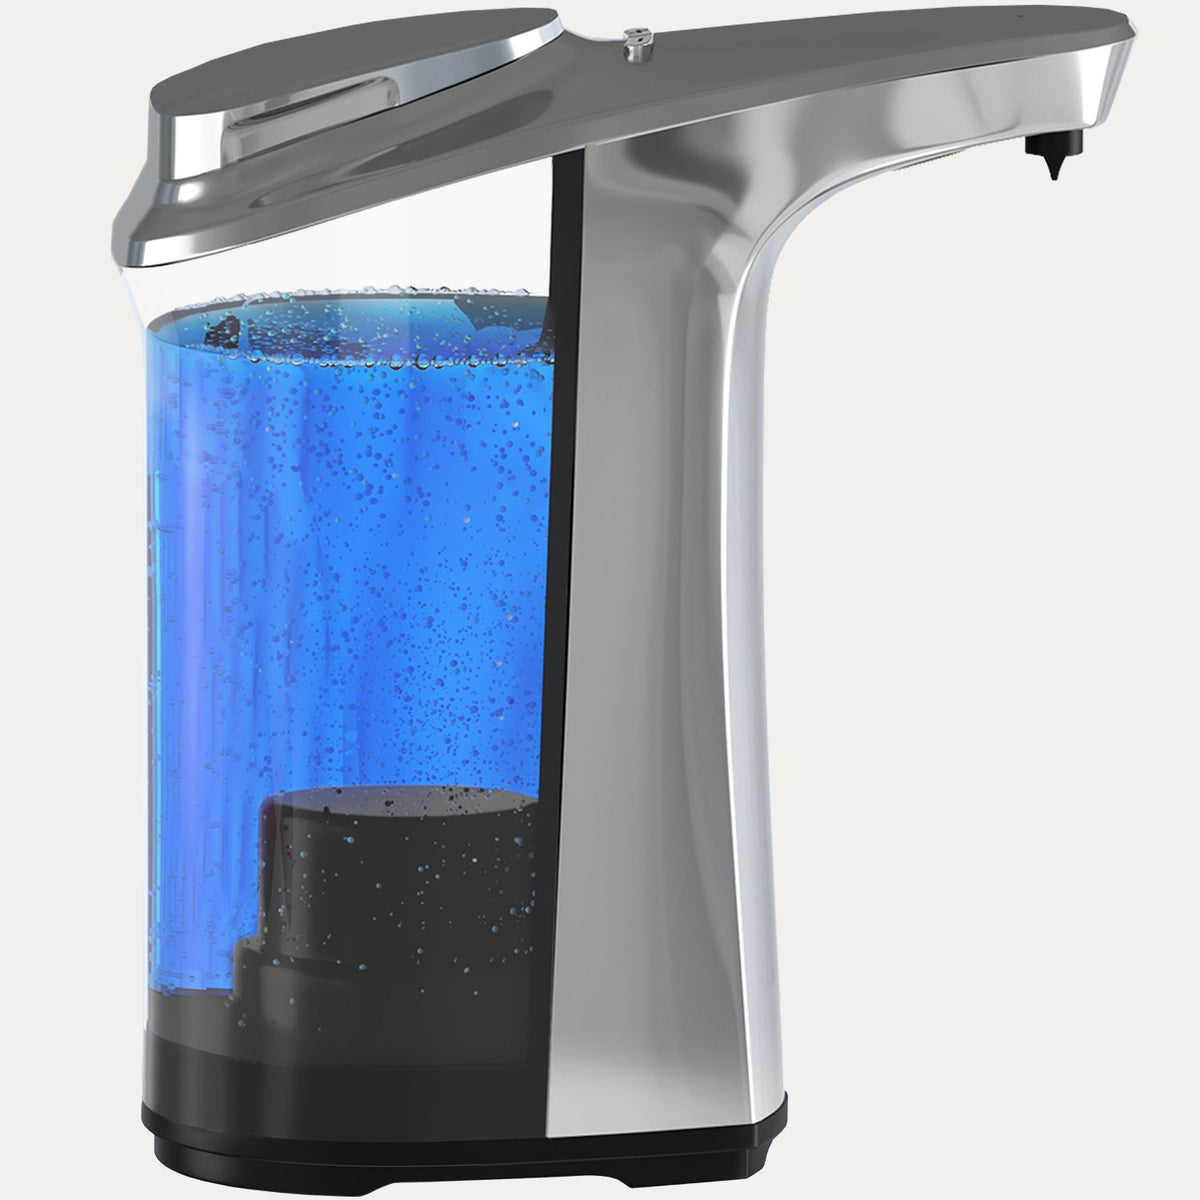 Automatic Soap Dispenser – Everlasting Comfort